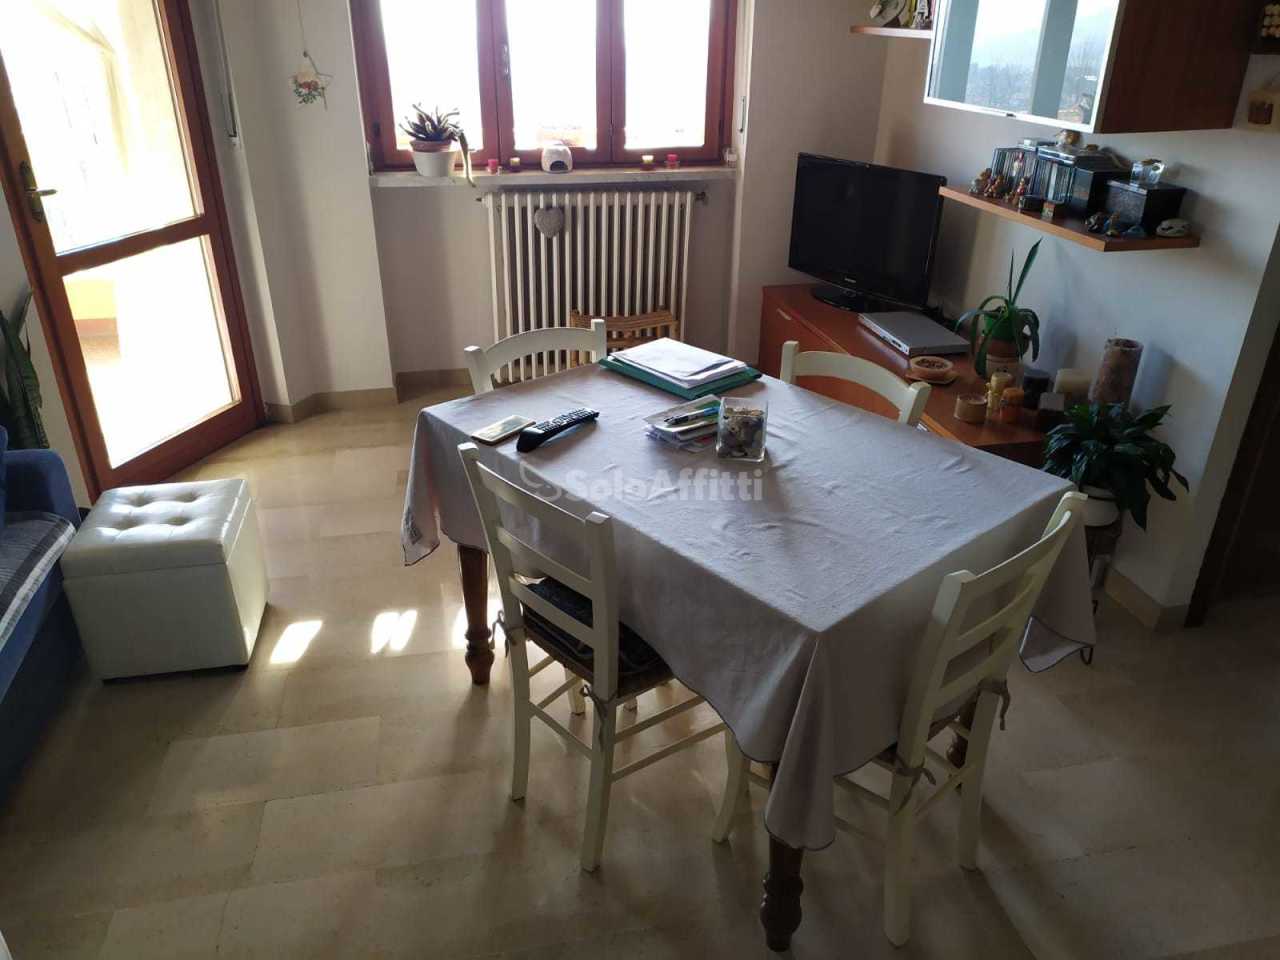 Appartamento in affitto a Cuorgnè, 2 locali, prezzo € 330 | CambioCasa.it